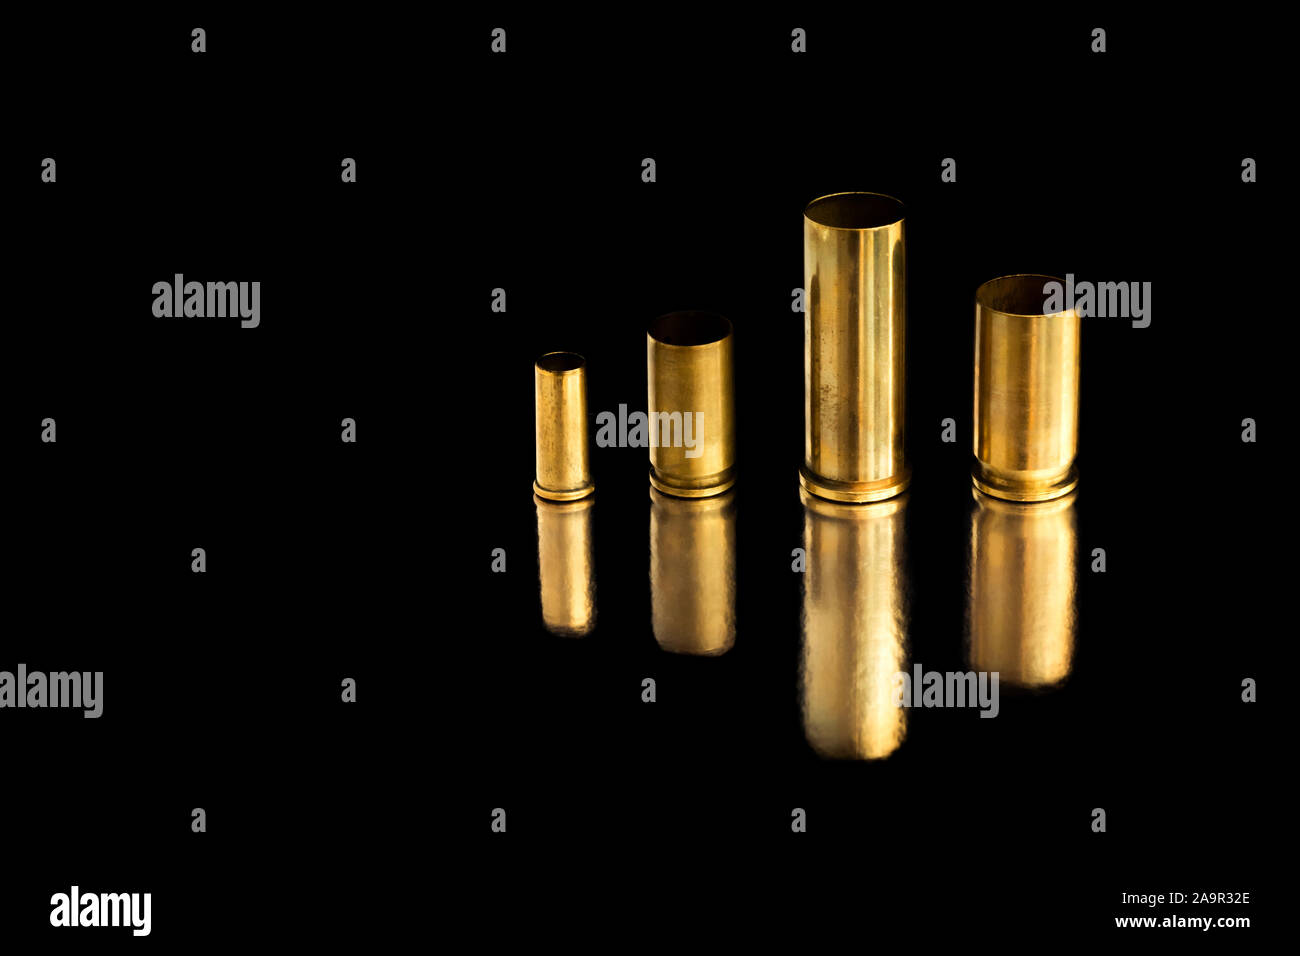 Comparaison de différentes tailles d'utilisé des obus sur une balle de fond isolé noir avec la réflexion d'une tin de table. Perception de la qualité Banque D'Images